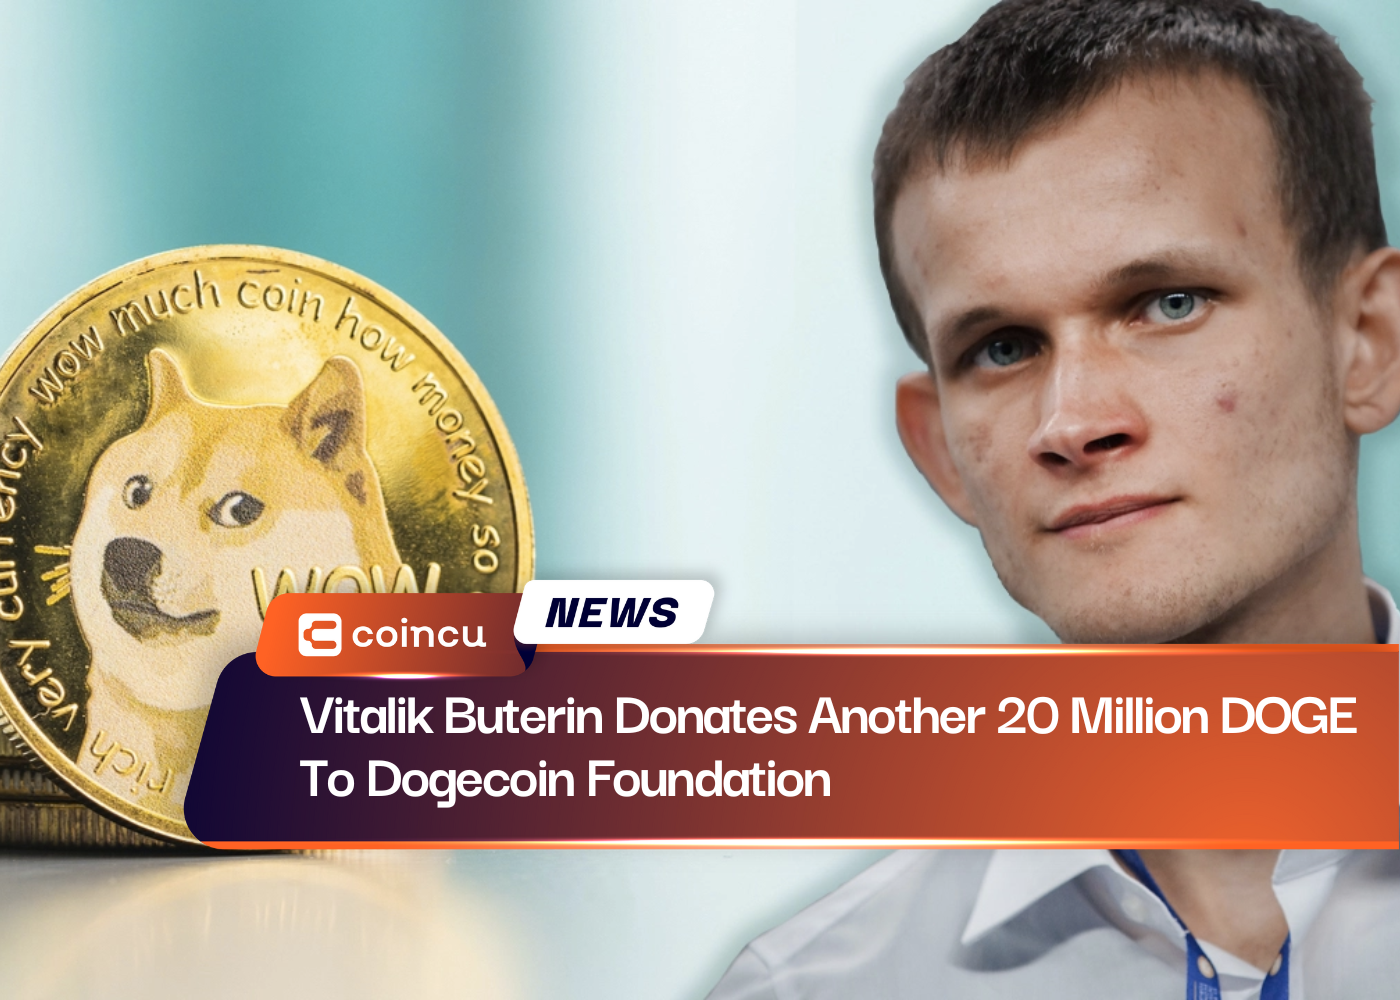 Vitalik Buterin spendet weitere 20 Millionen DOGE an die Dogecoin Foundation